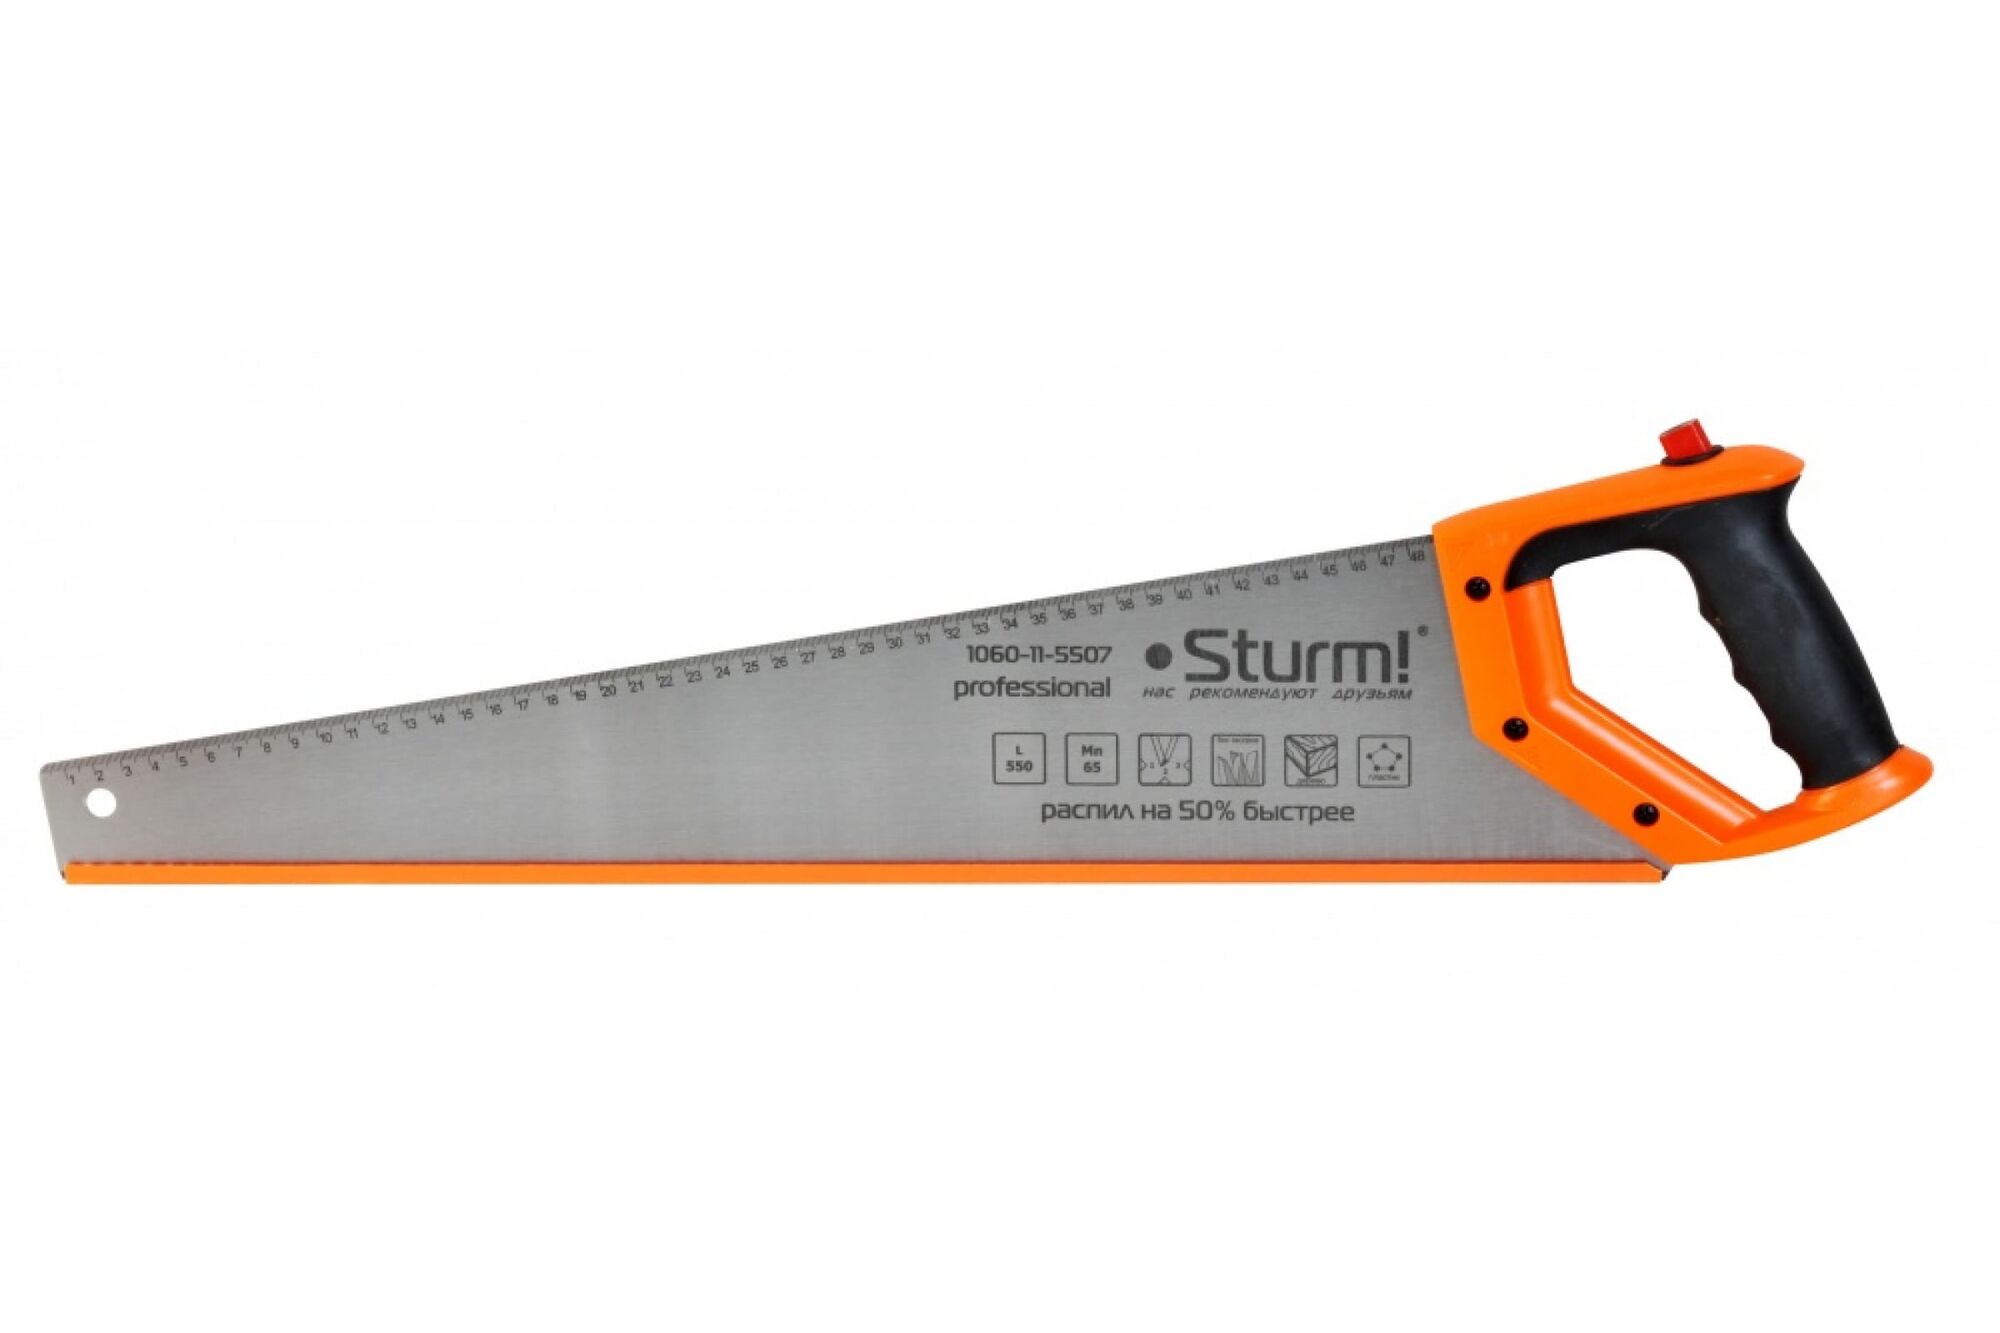 Ножовка по дереву с карандашом Sturm 1060-11-5507